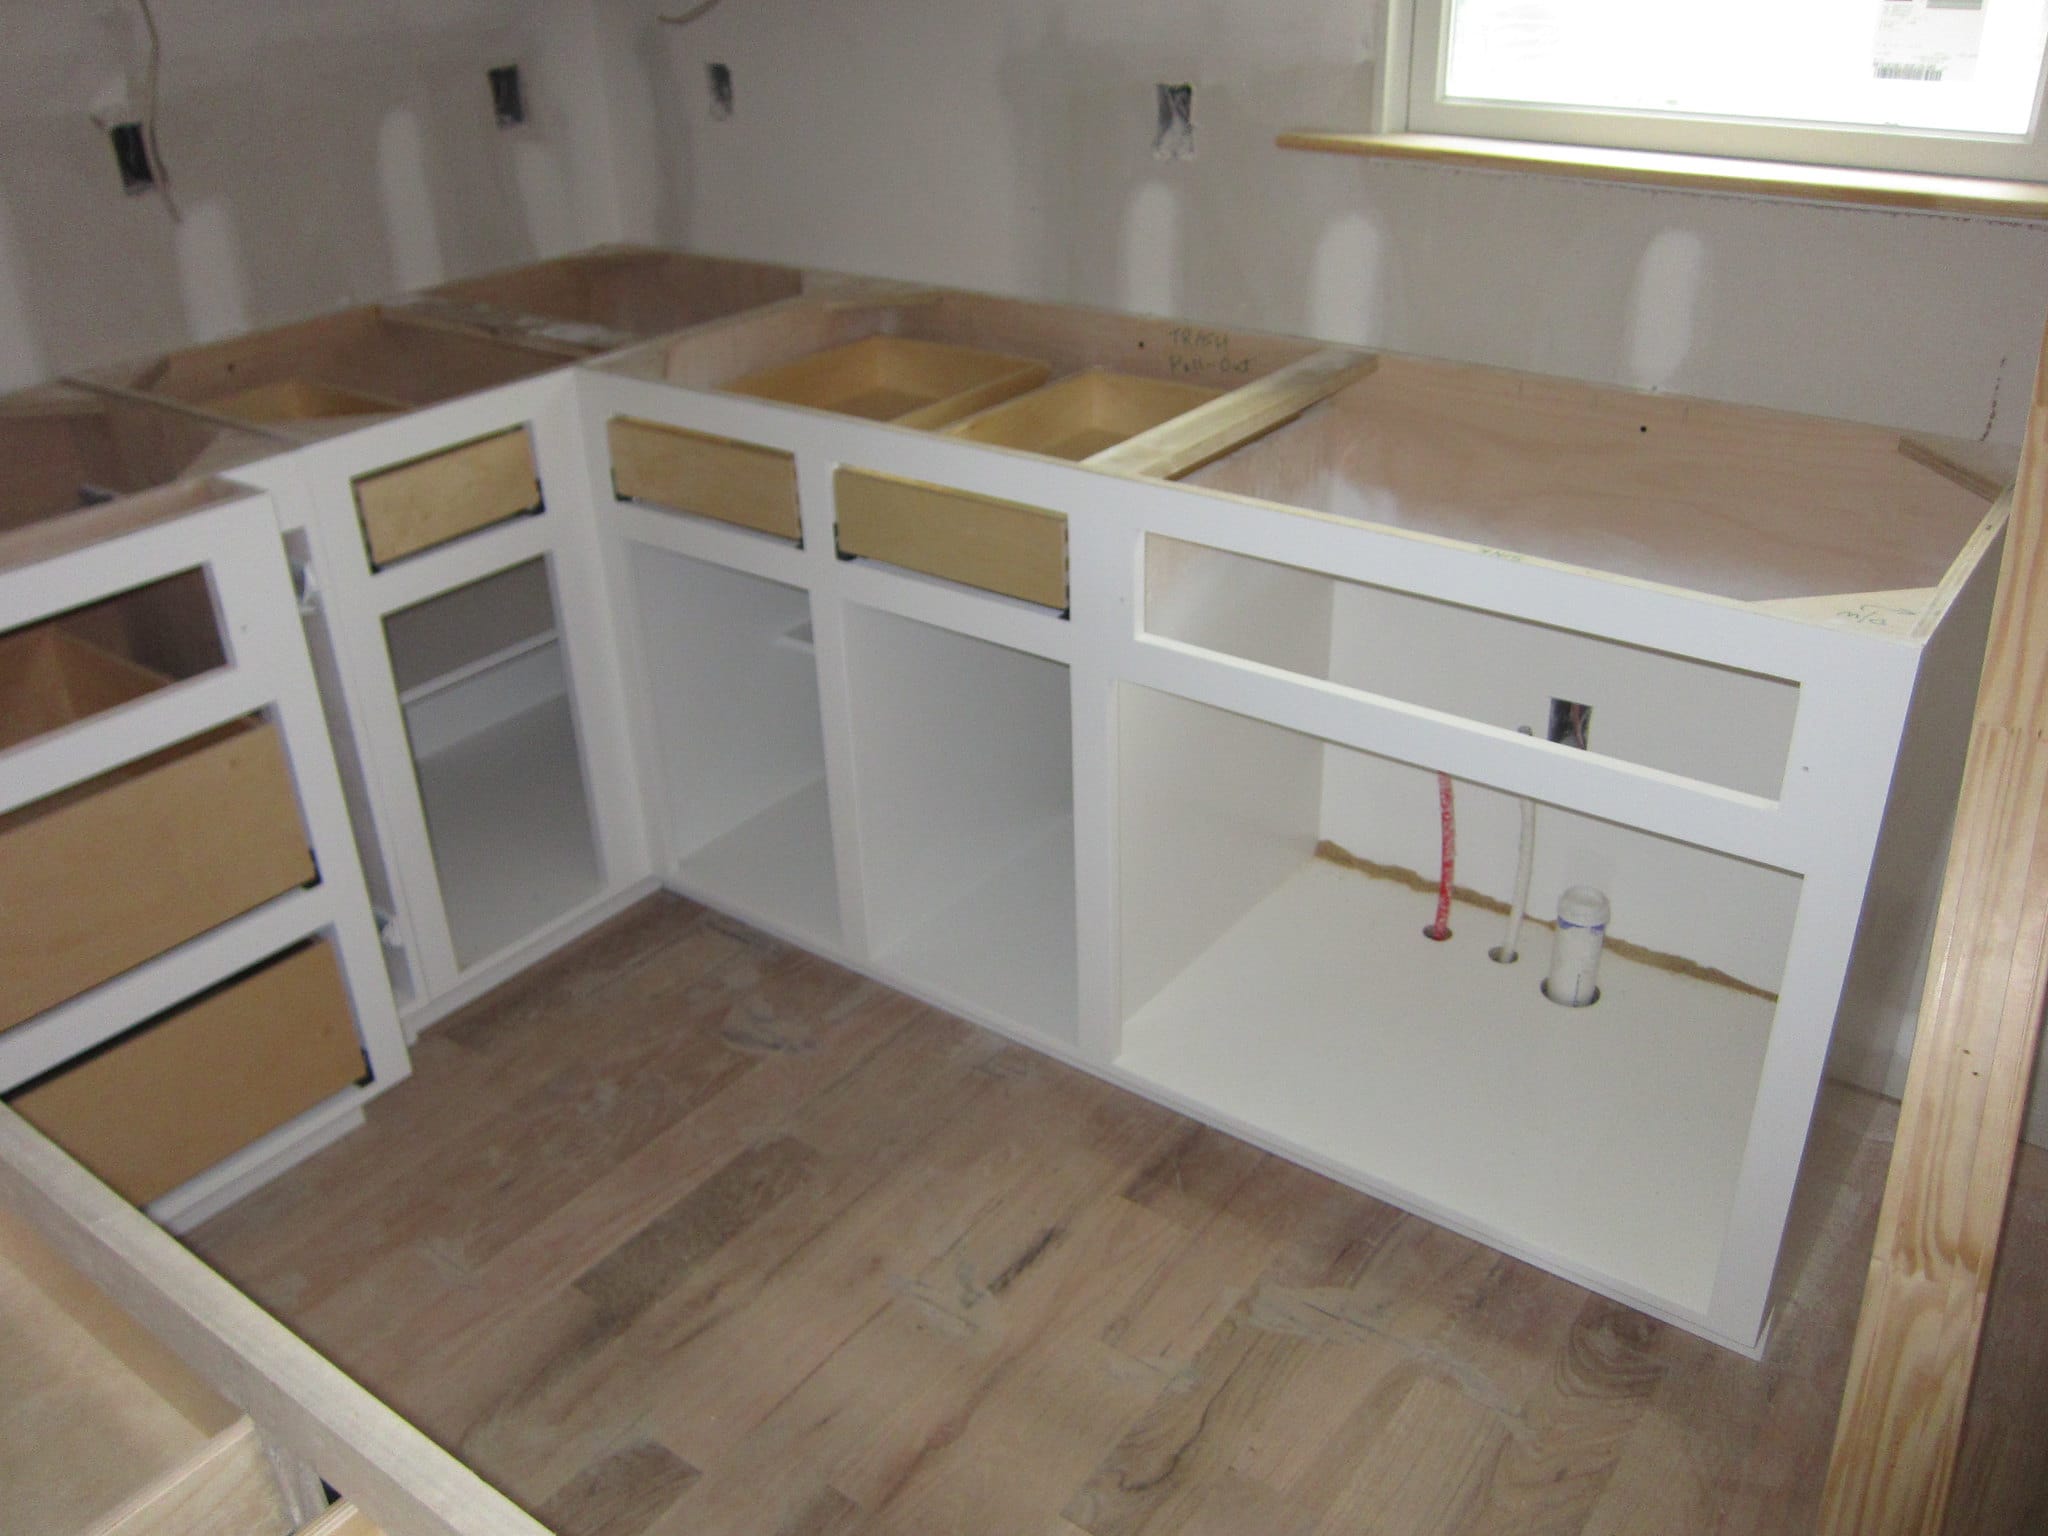 3 Ways We Repair Kitchen Cabinets